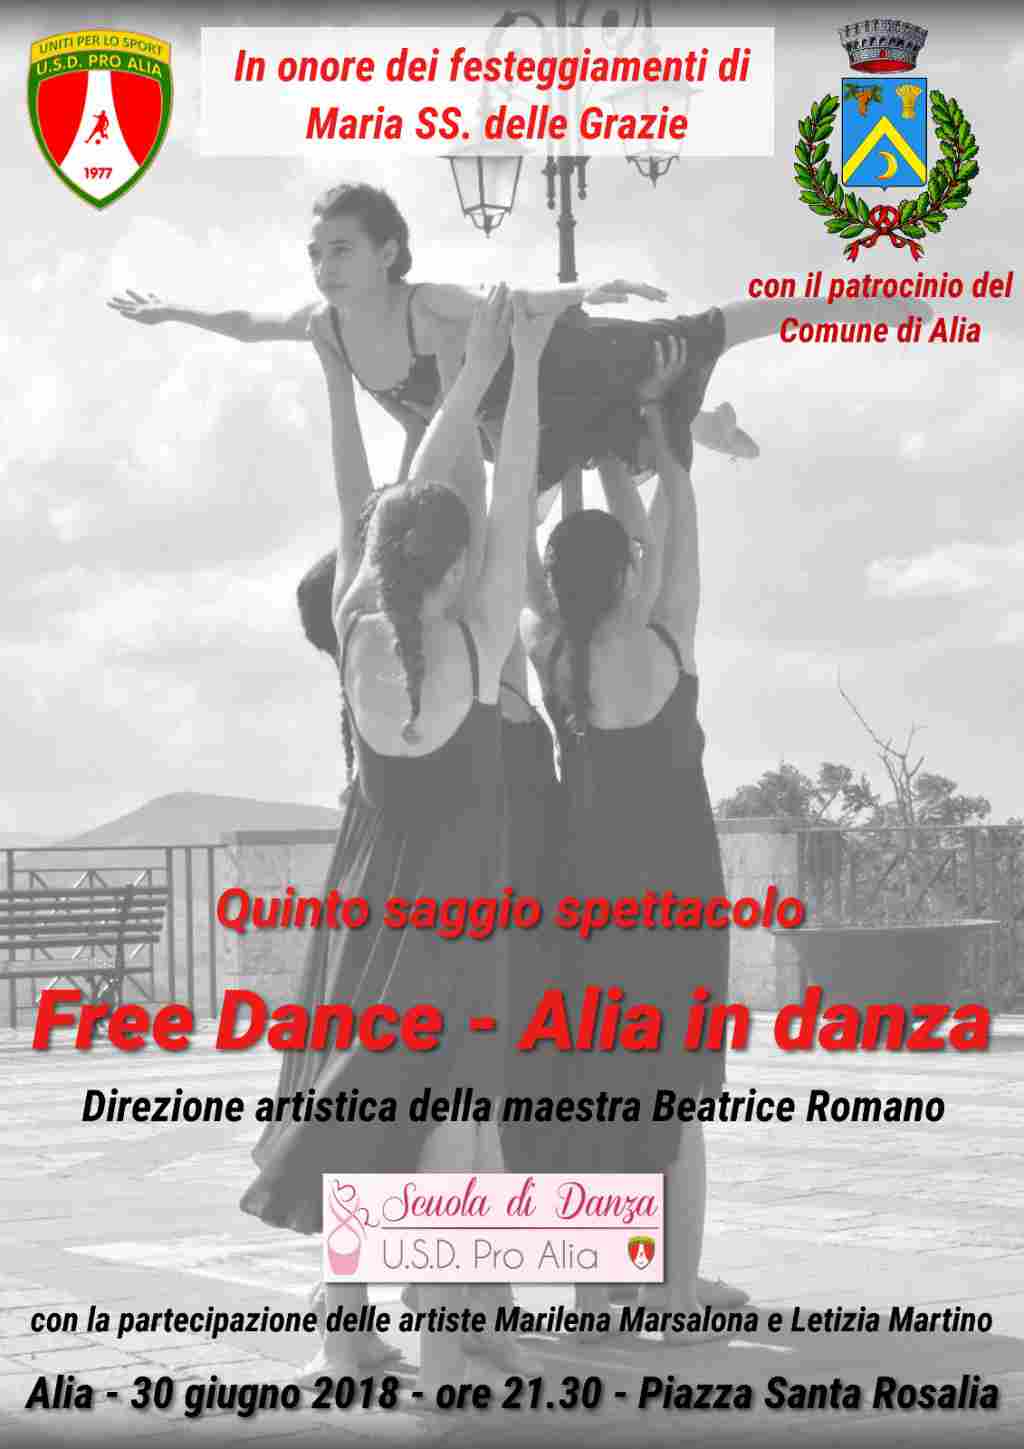 QUINTO SAGGIO SPETTACOLO
FREE DANCE - ALIA IN DANZA